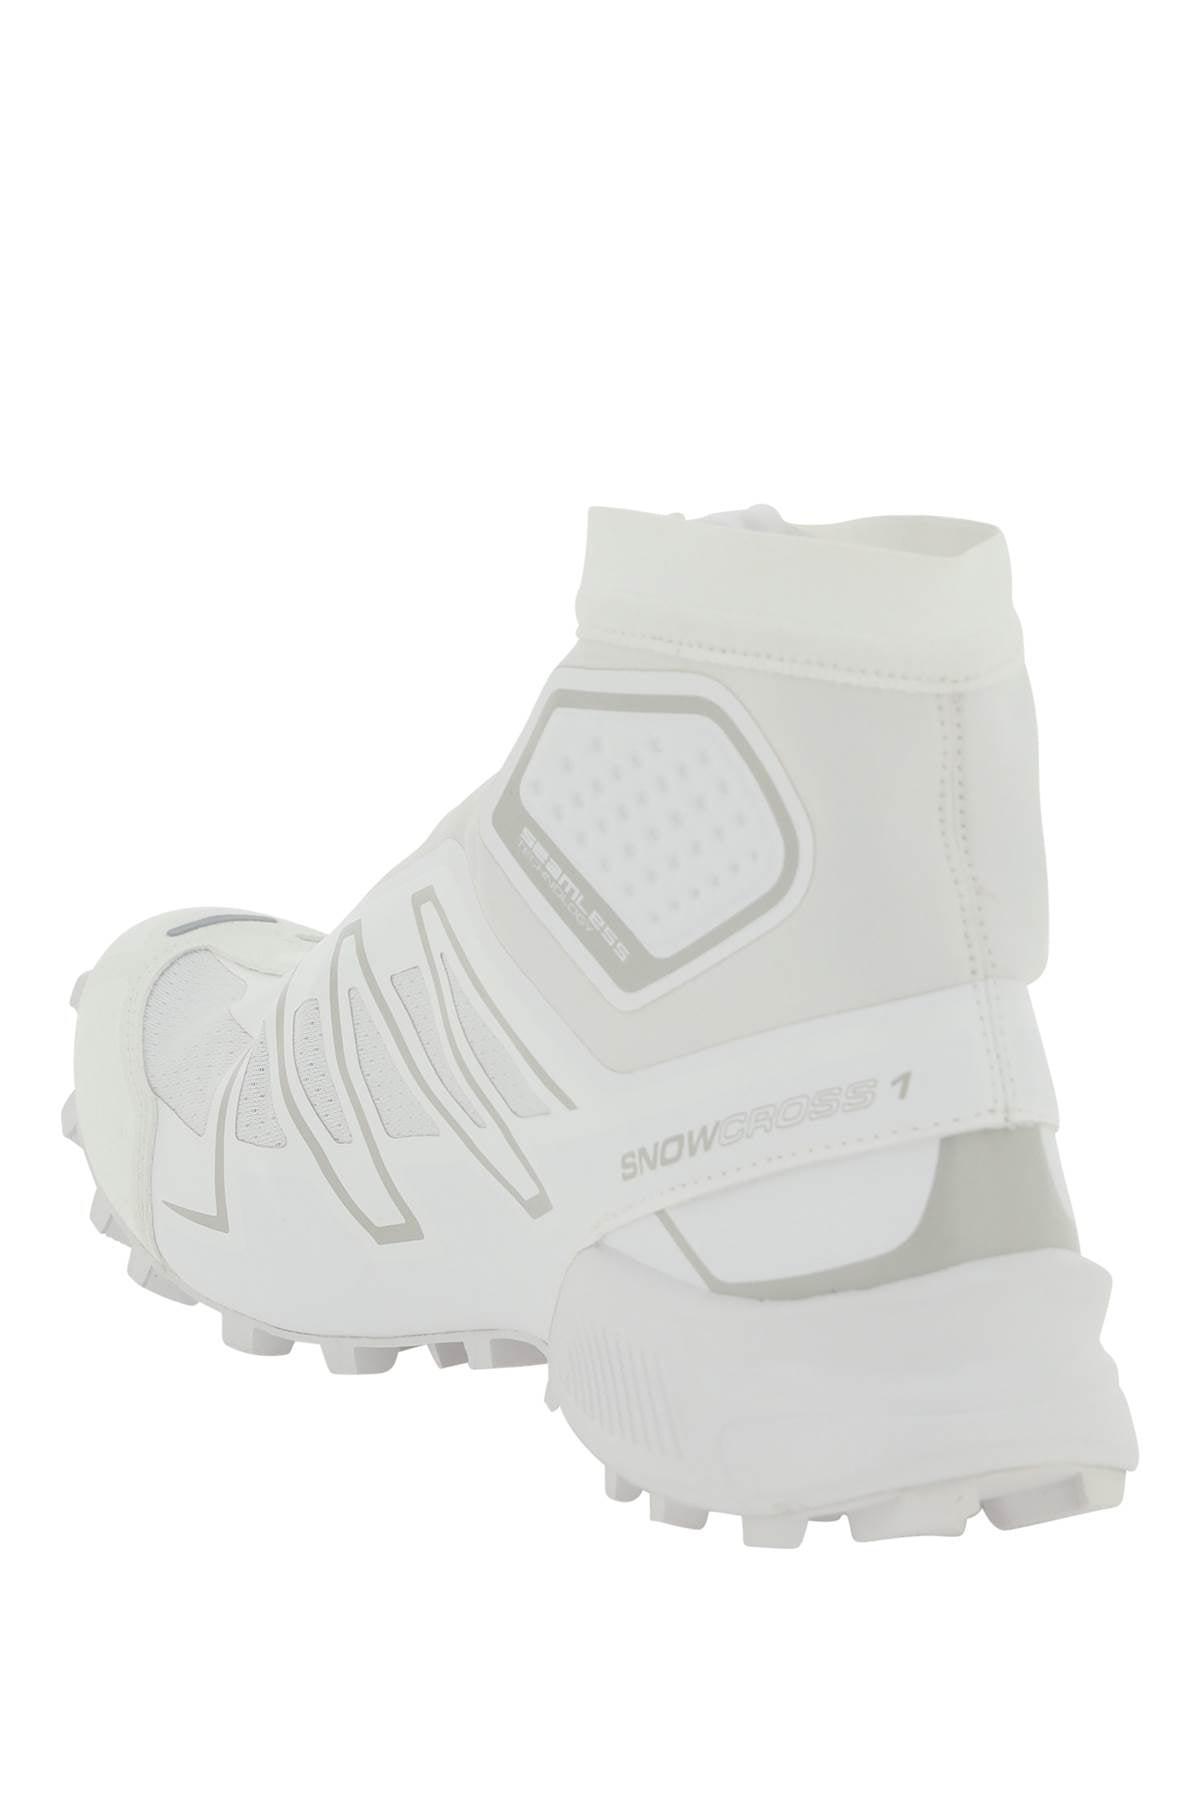 Salomon 'snowcross' Sneakers in White for Men | Lyst